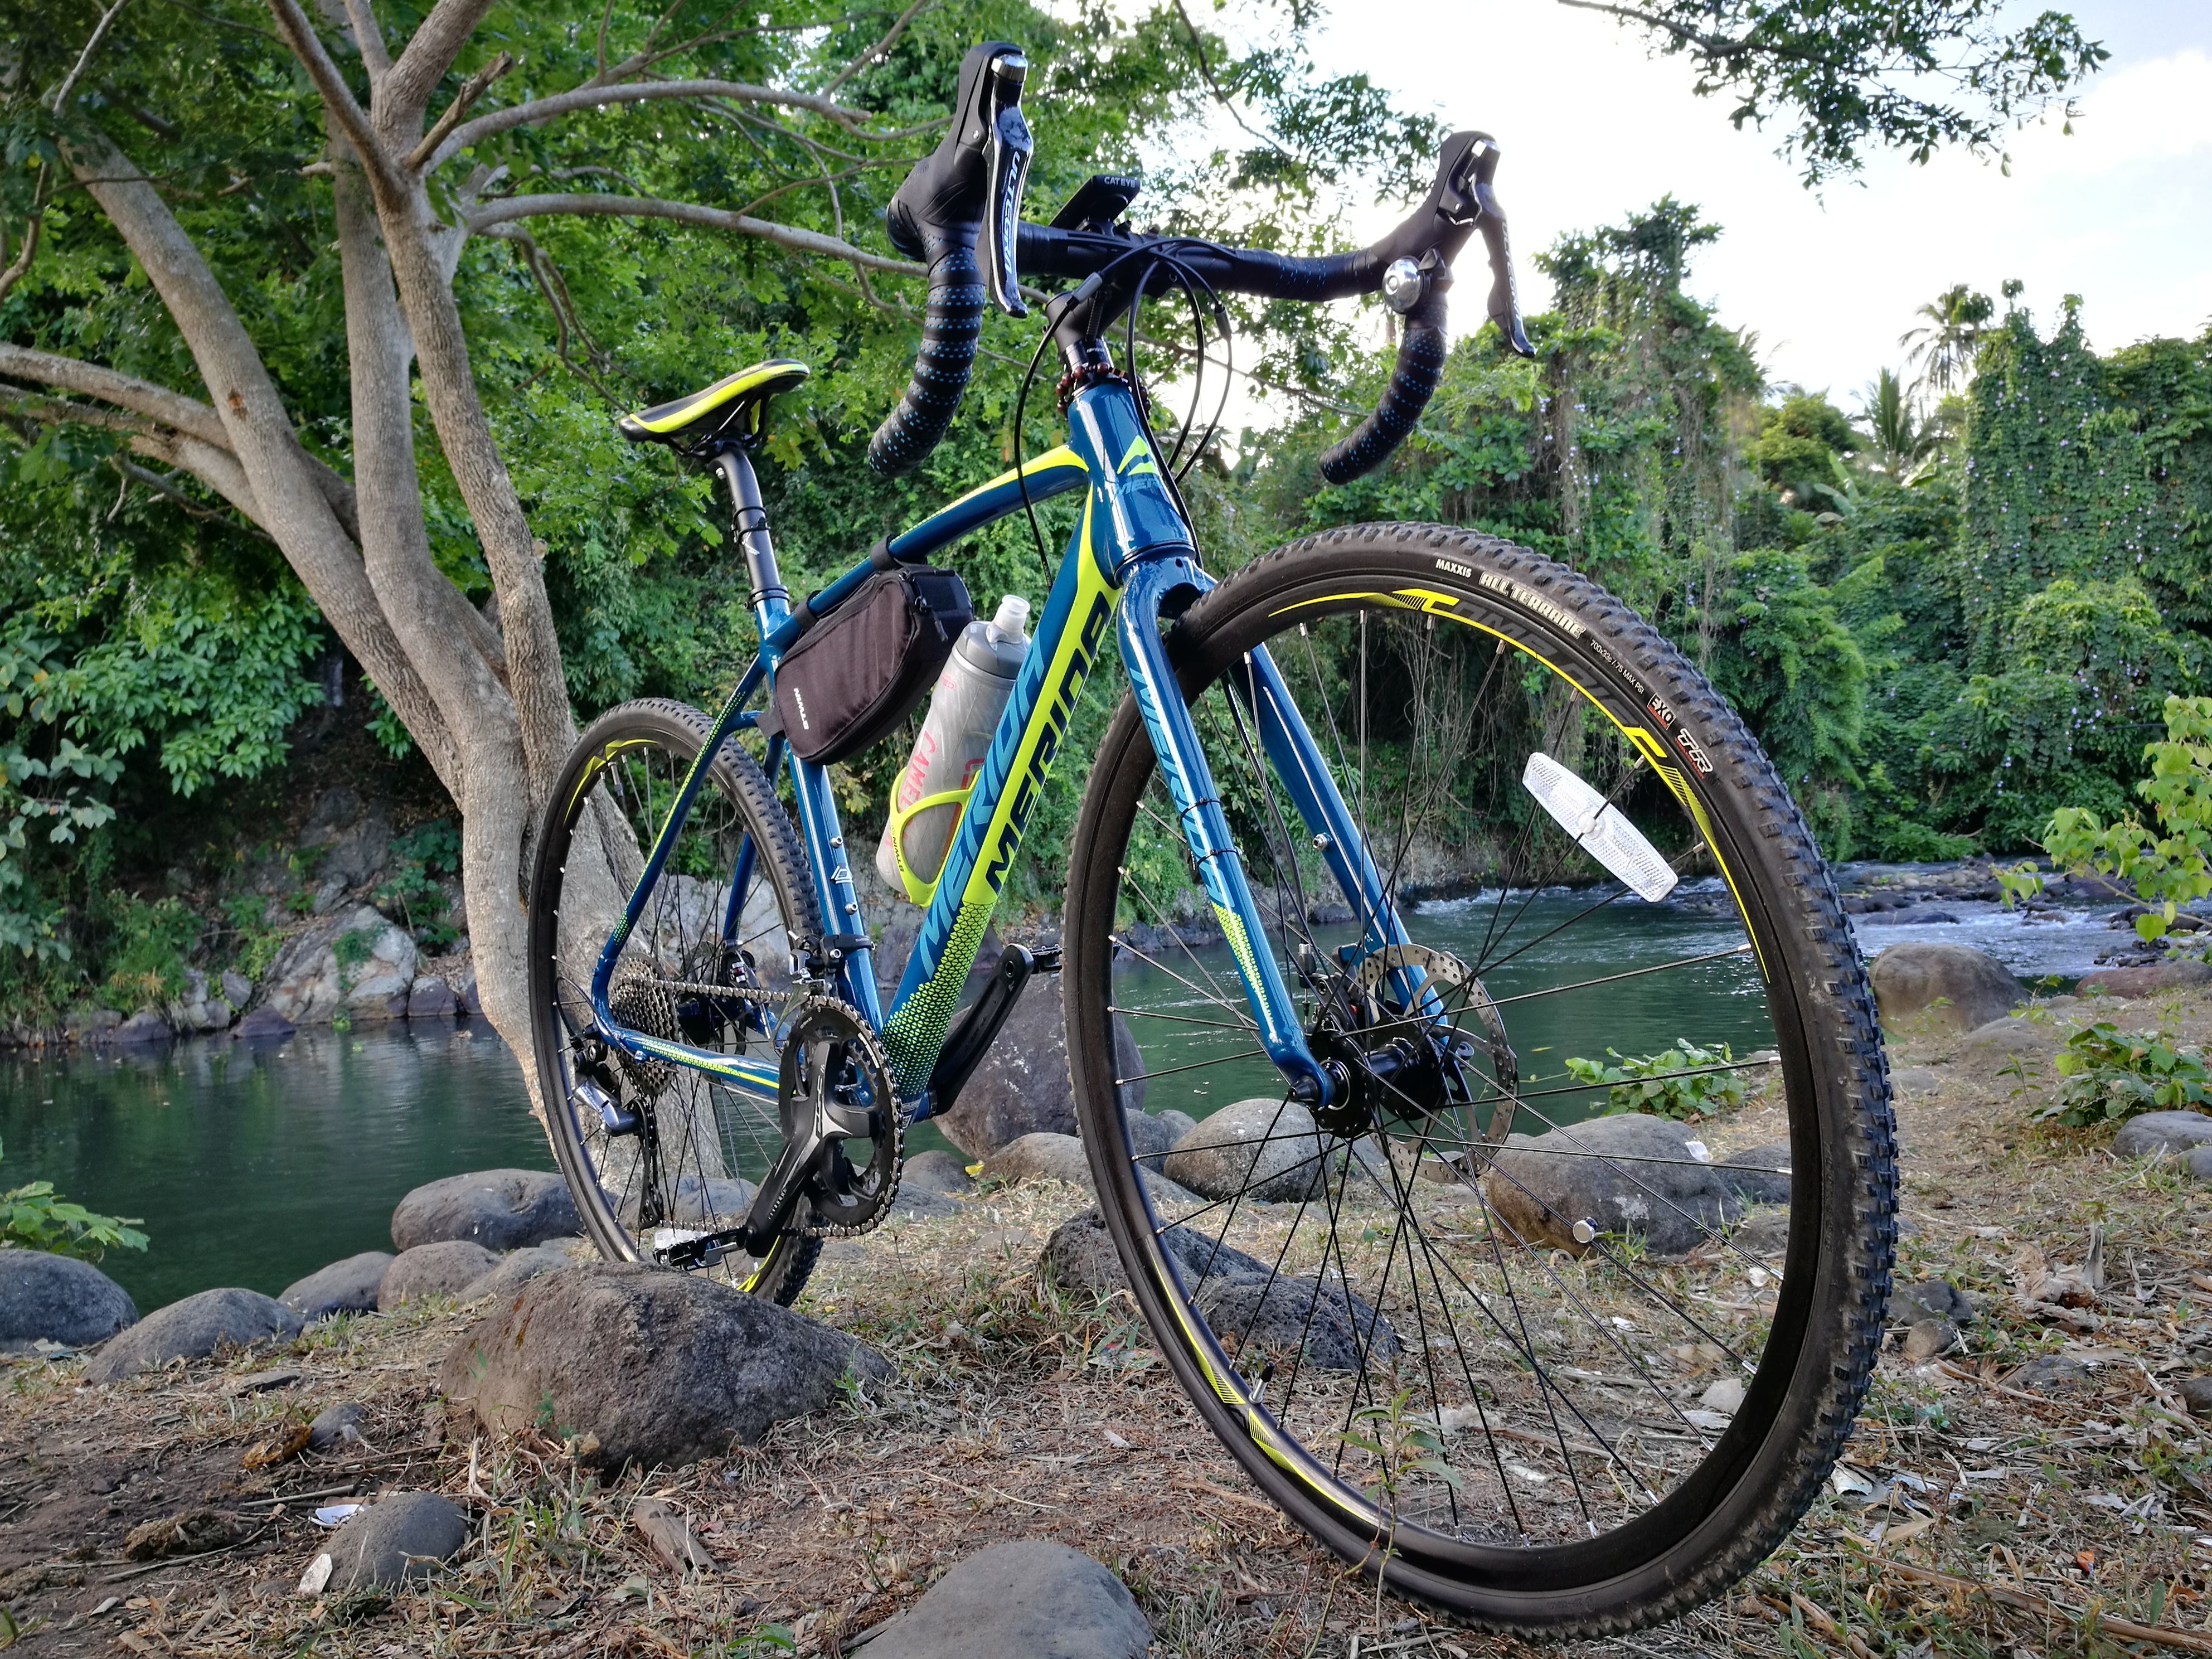 merida cyclo cross 300